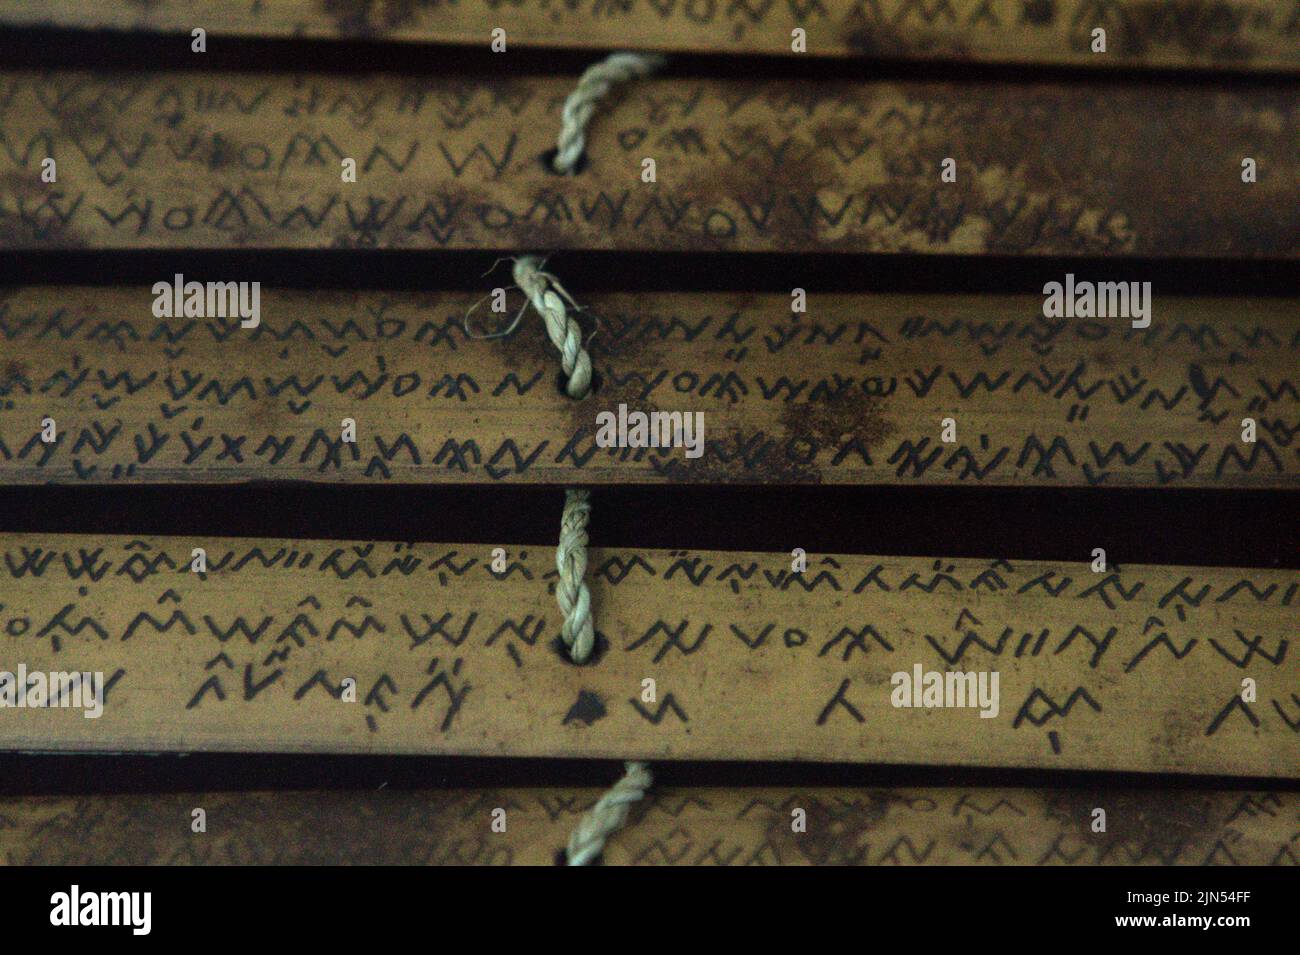 En la Biblioteca Nacional de Yakarta, Indonesia, se fotografian antiguos guiones escritos en bambú, originados en Lampung (Sumatra). Foto de stock